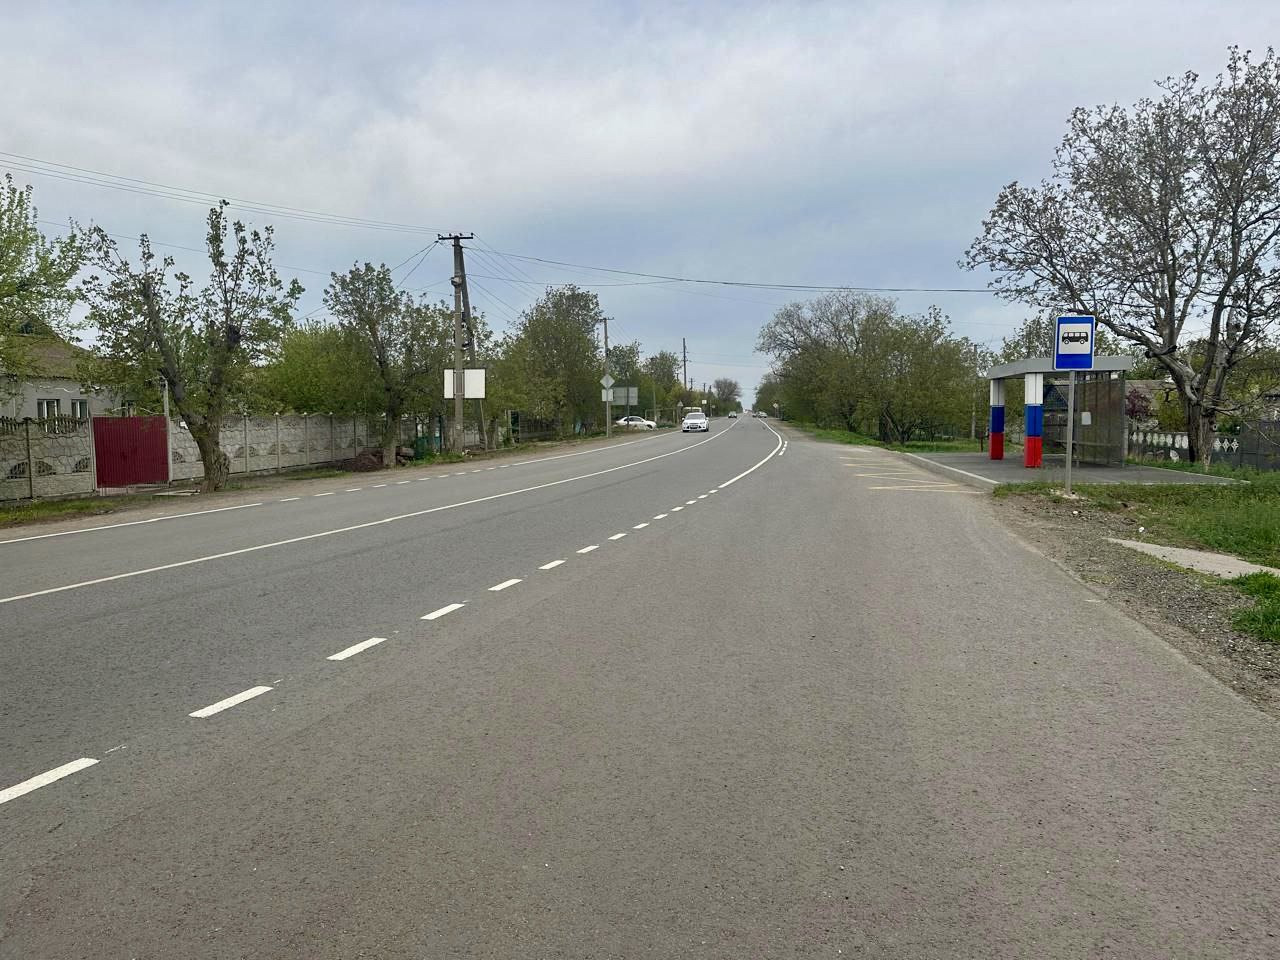  Завершена укладка асфальтобетона на более чем 22 км автодороги в Херсонской области